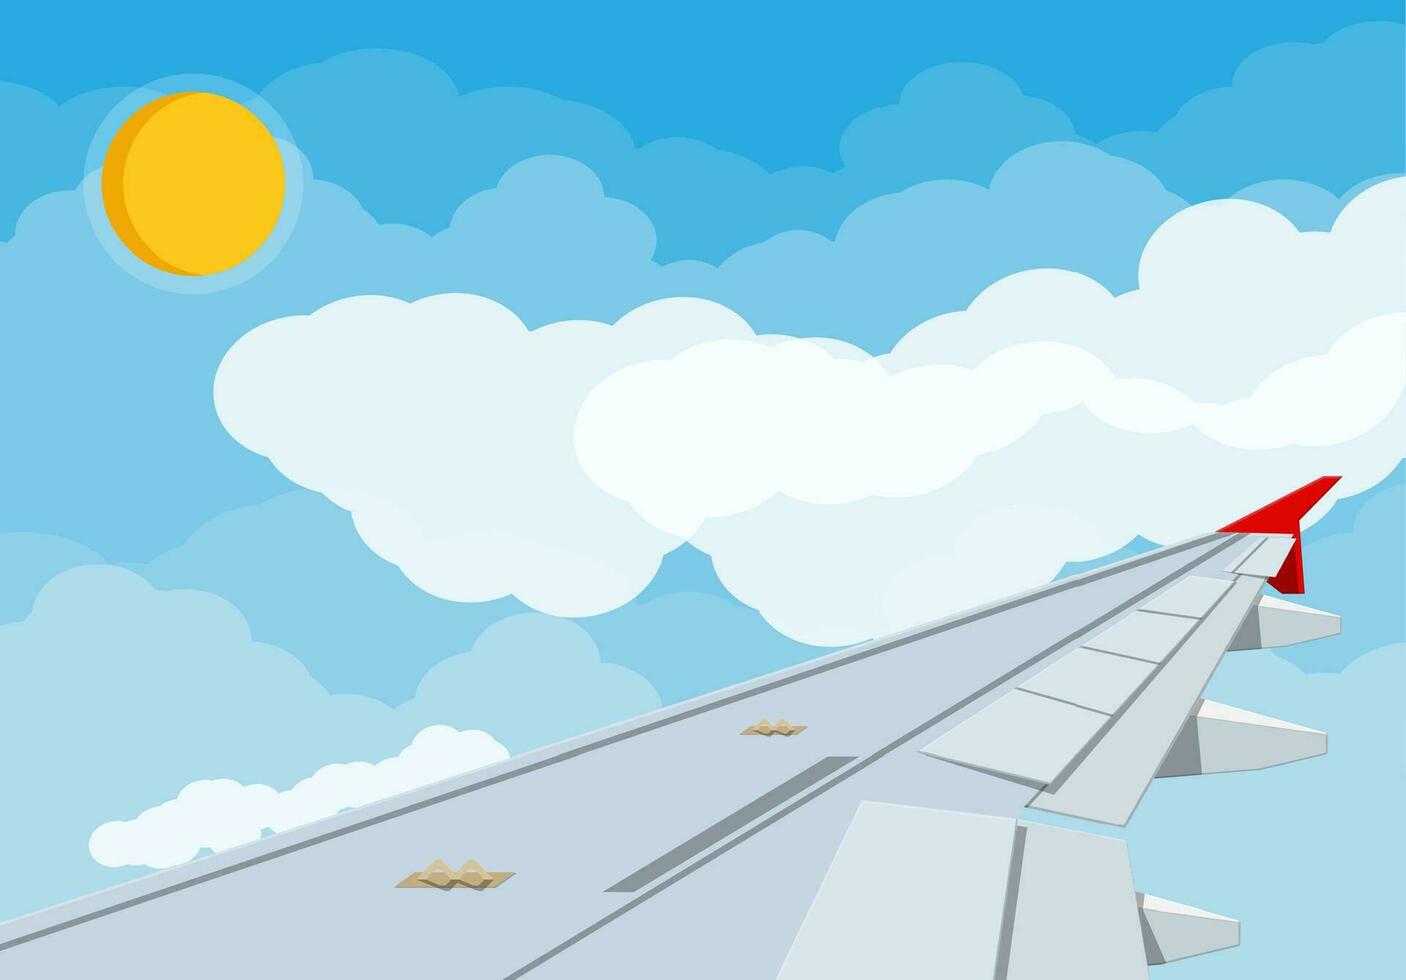 se av vinge av flygplan i himmel. luft resa eller semester begrepp. himmel med moln och Sol. vektor illustration i platt stil